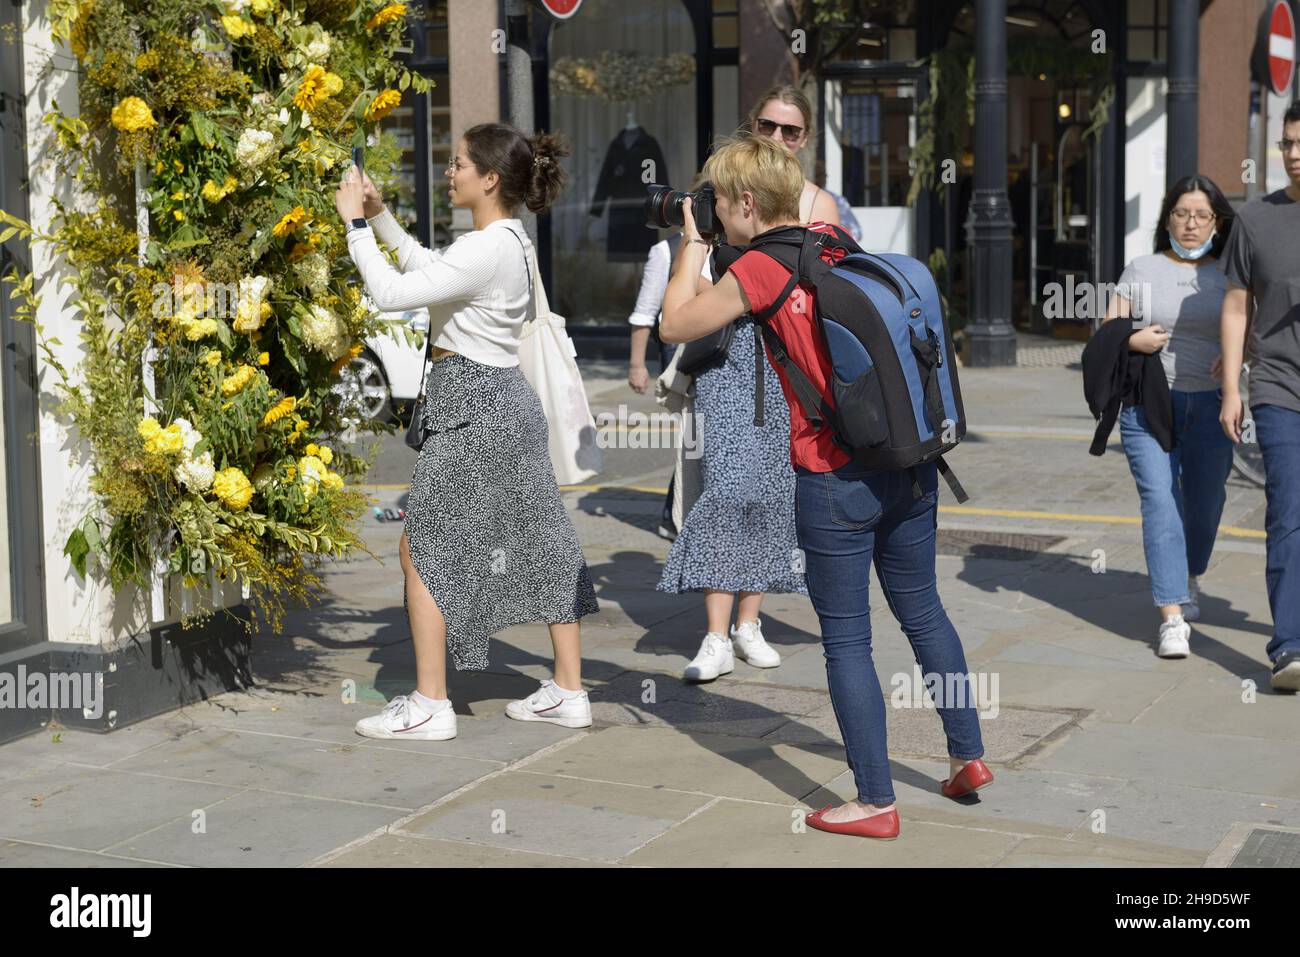 Fotografin, die ein Foto von einer Frau während der Chelsea in Bloom ansieht - jährliche Blumenkunstausstellung und Blumendusche in den s Stockfoto